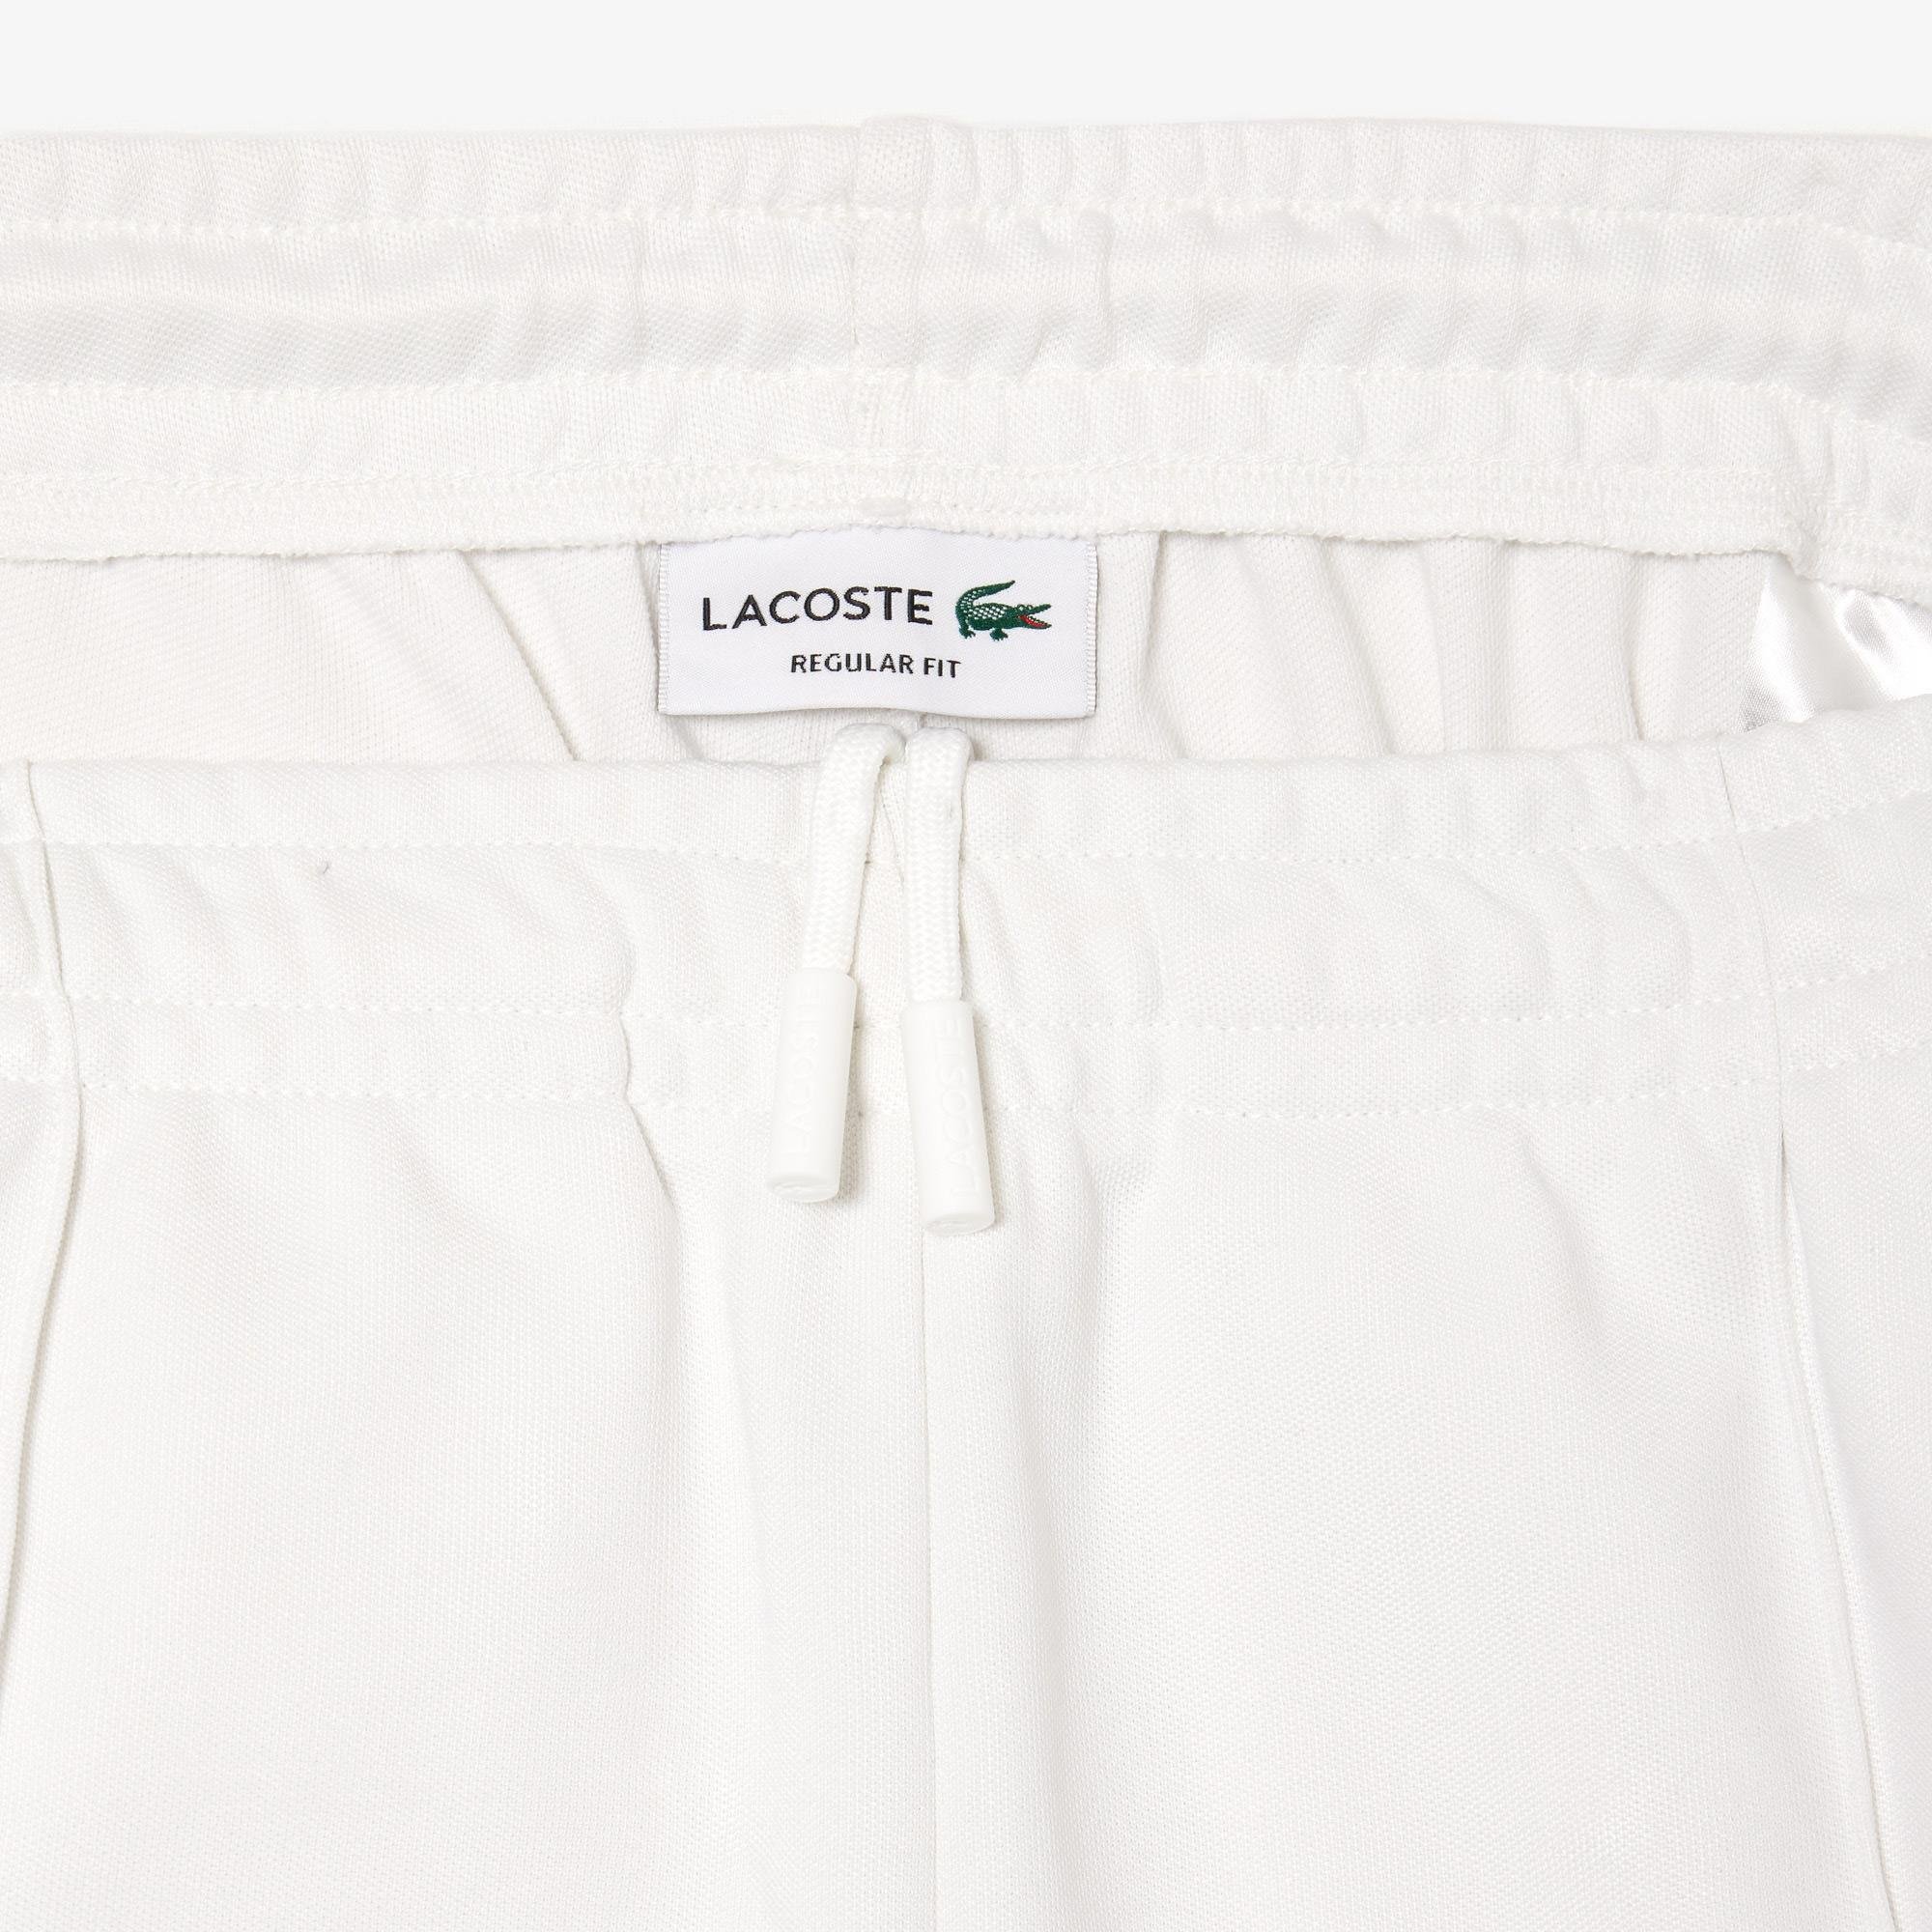 Lacoste Original Paris Track Pants